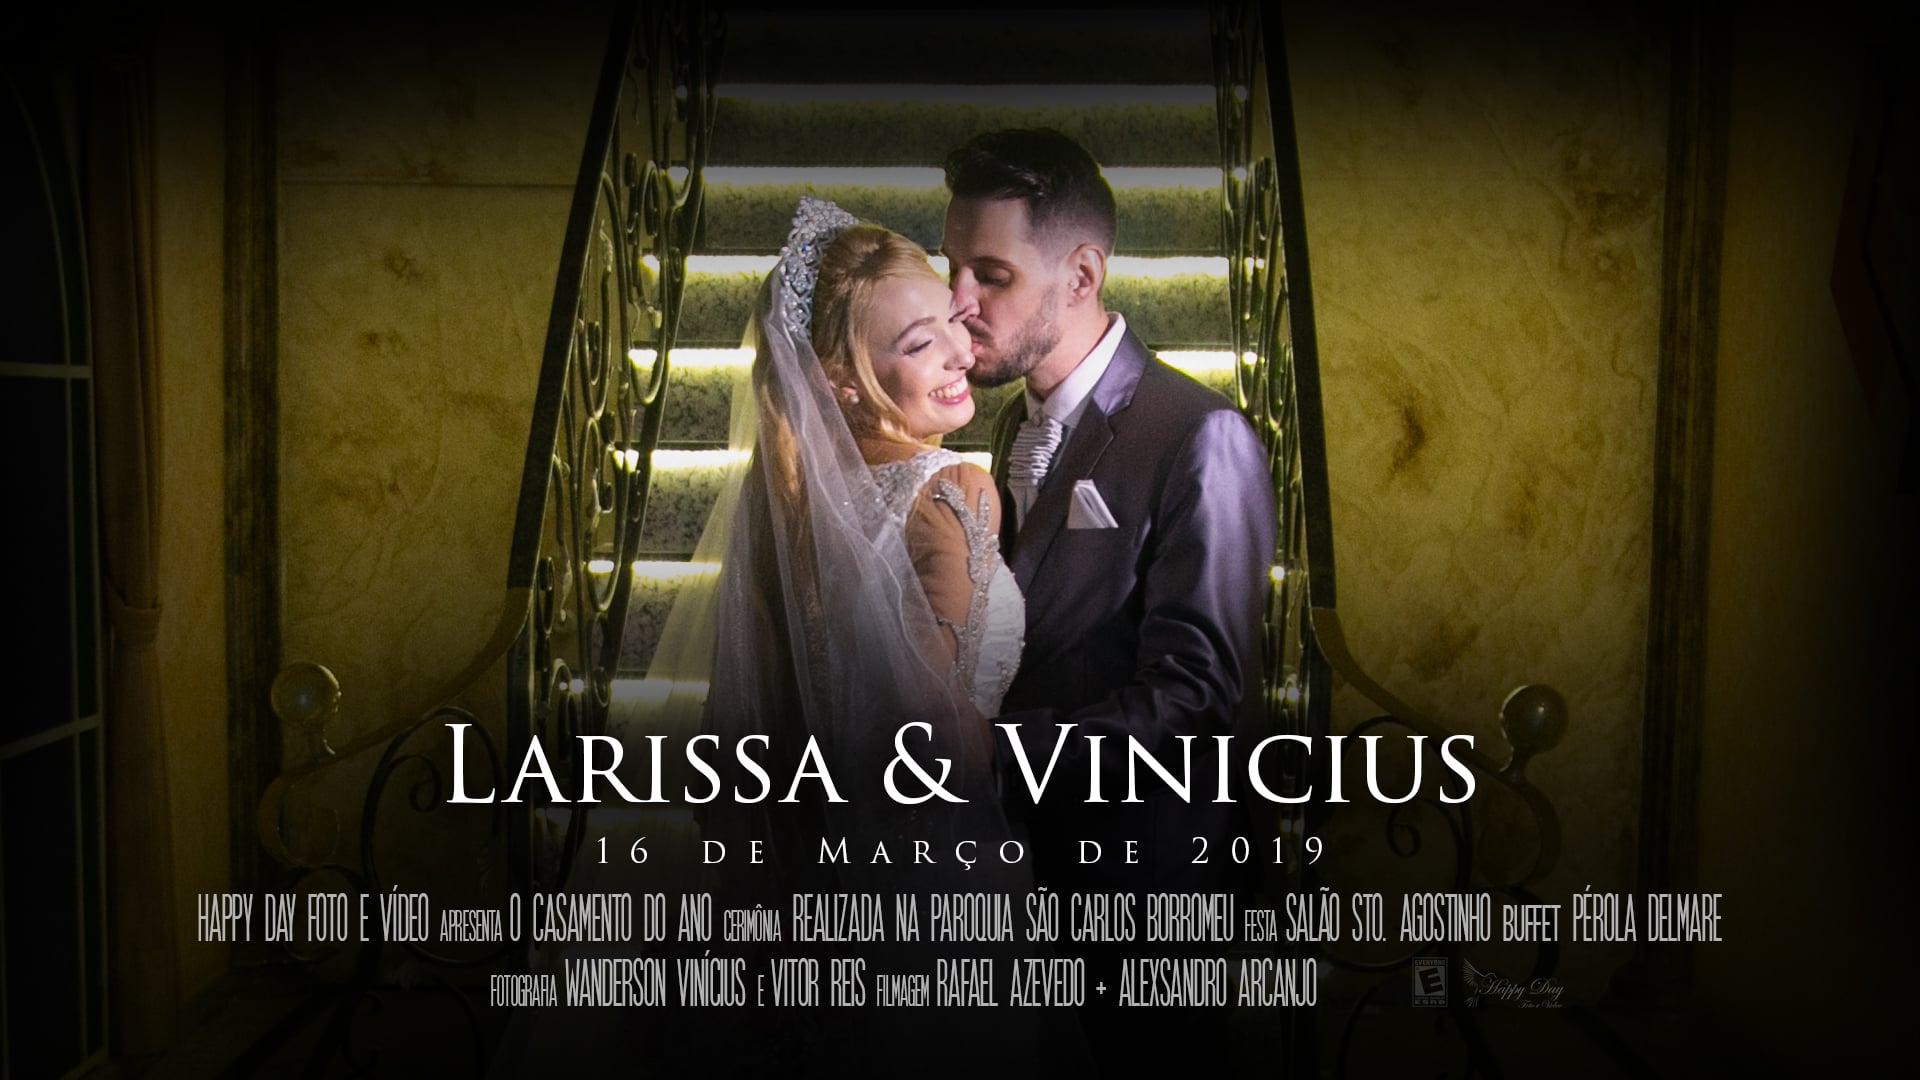 LARISSA E VINICIUS VIMEO